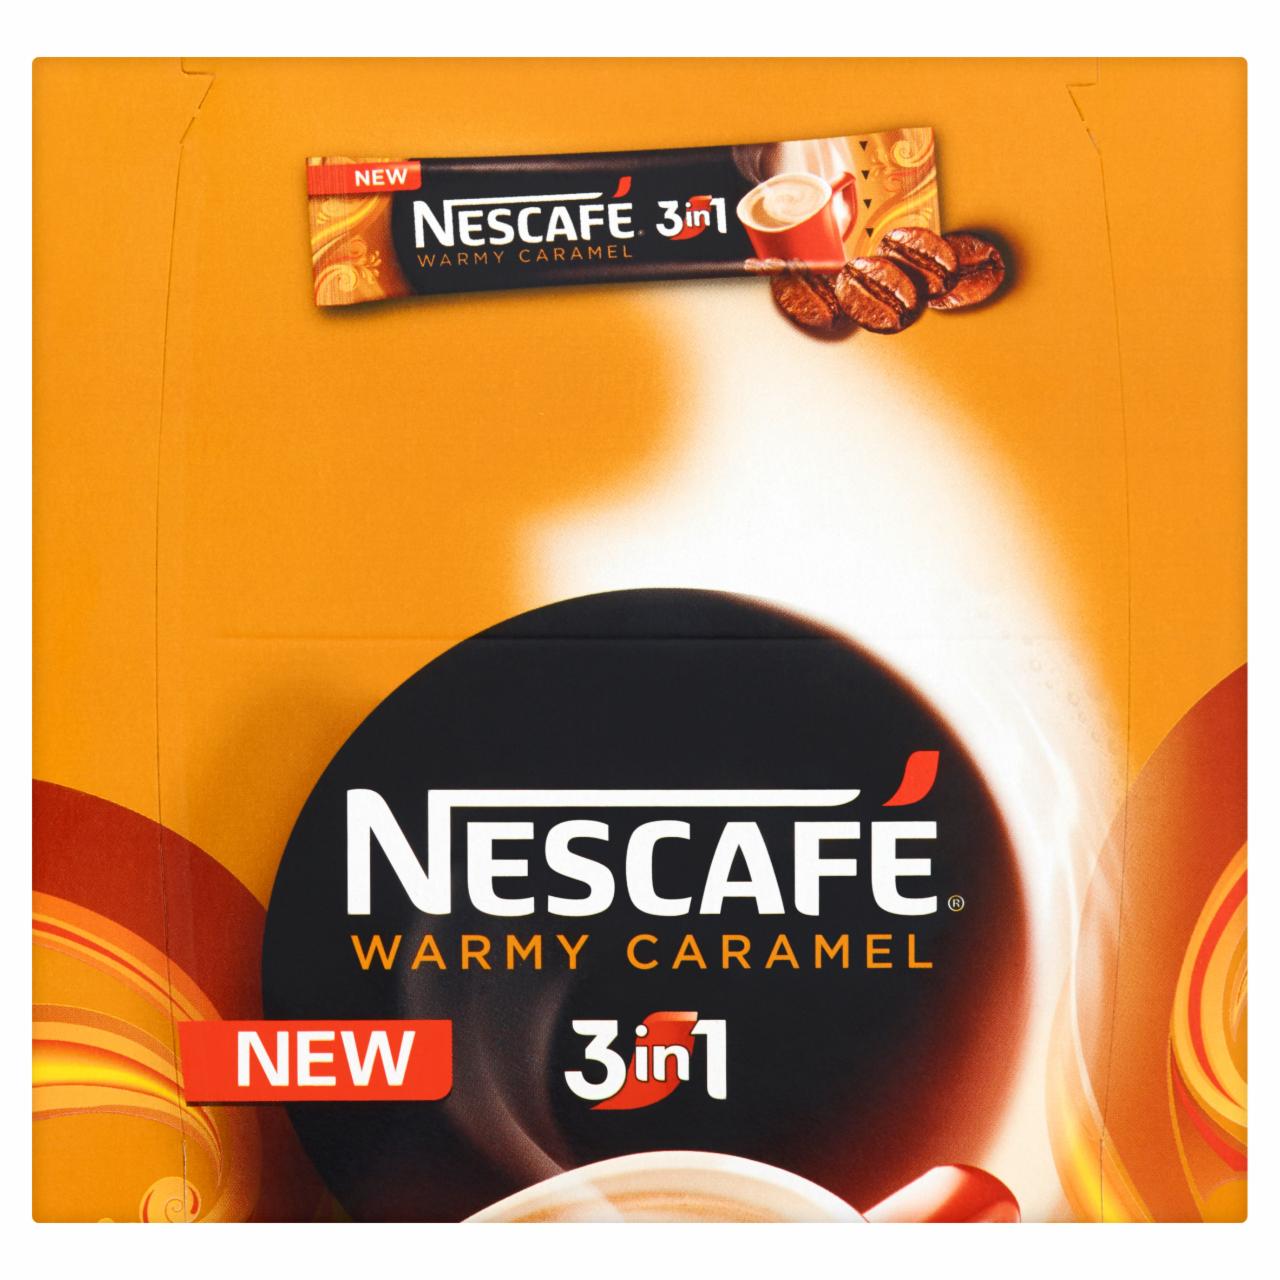 Zdjęcia - Nescafé 3in1 Warmy Caramel Rozpuszczalny napój kawowy 448 g (28 x 16 g)